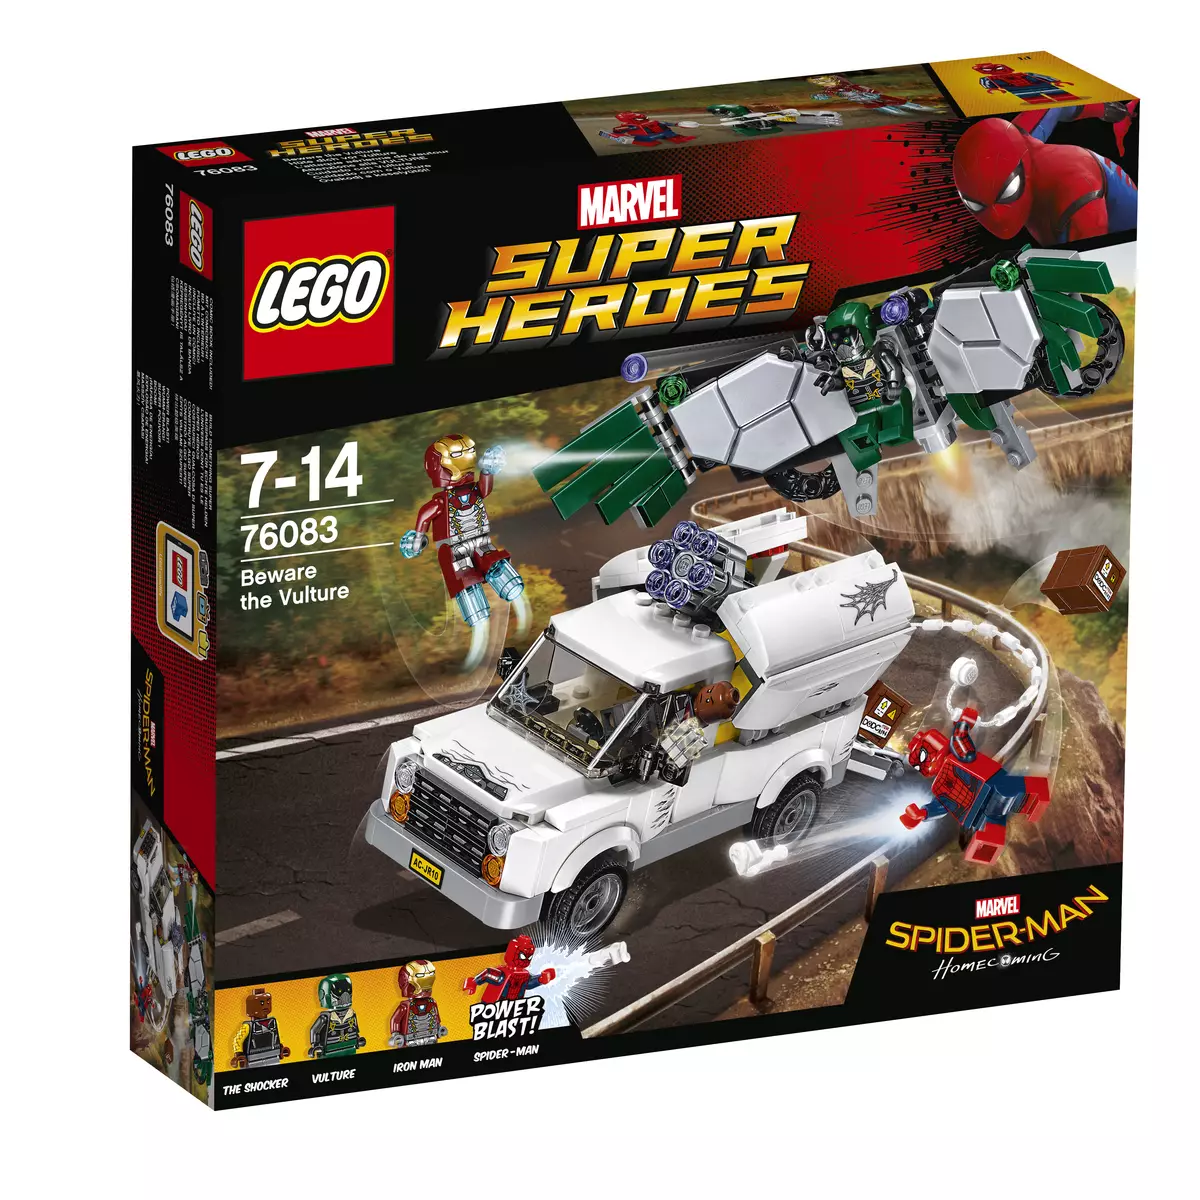 LEGO presentó una nueva colección de juguetes en honor de 